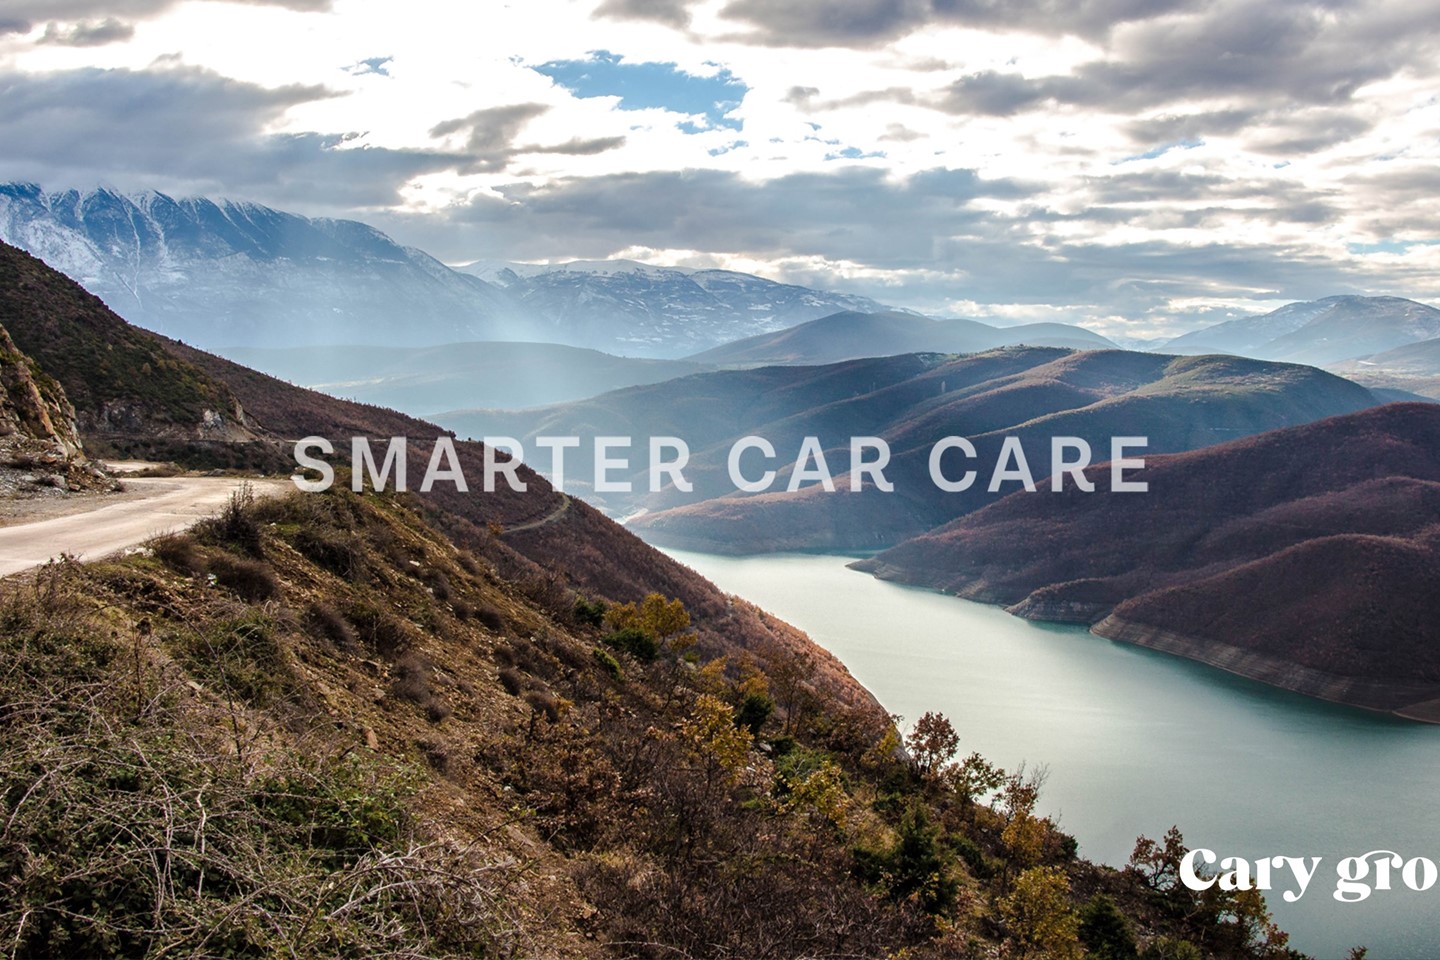 Smarter Car Care